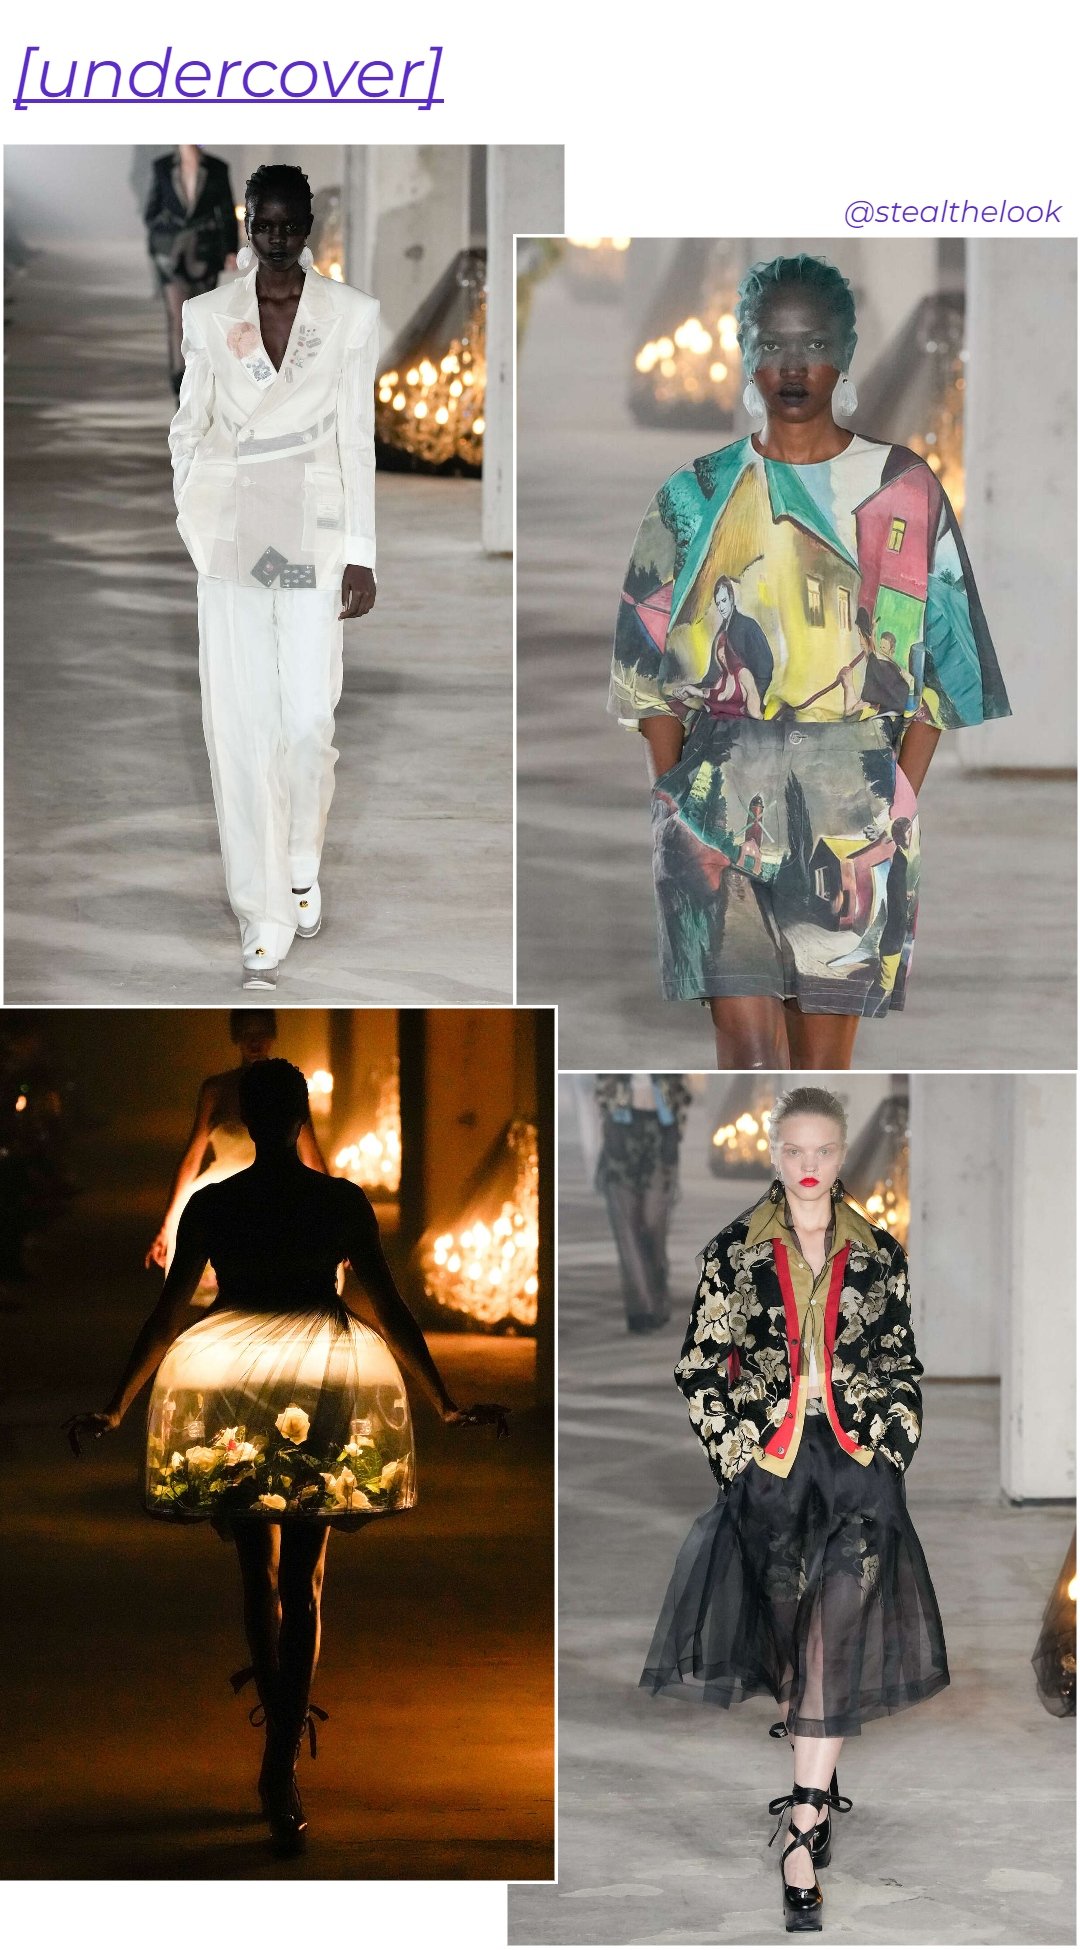 Undercover - roupas diversas - Paris Fashion Week - verão - colagem de imagens - https://stealthelook.com.br